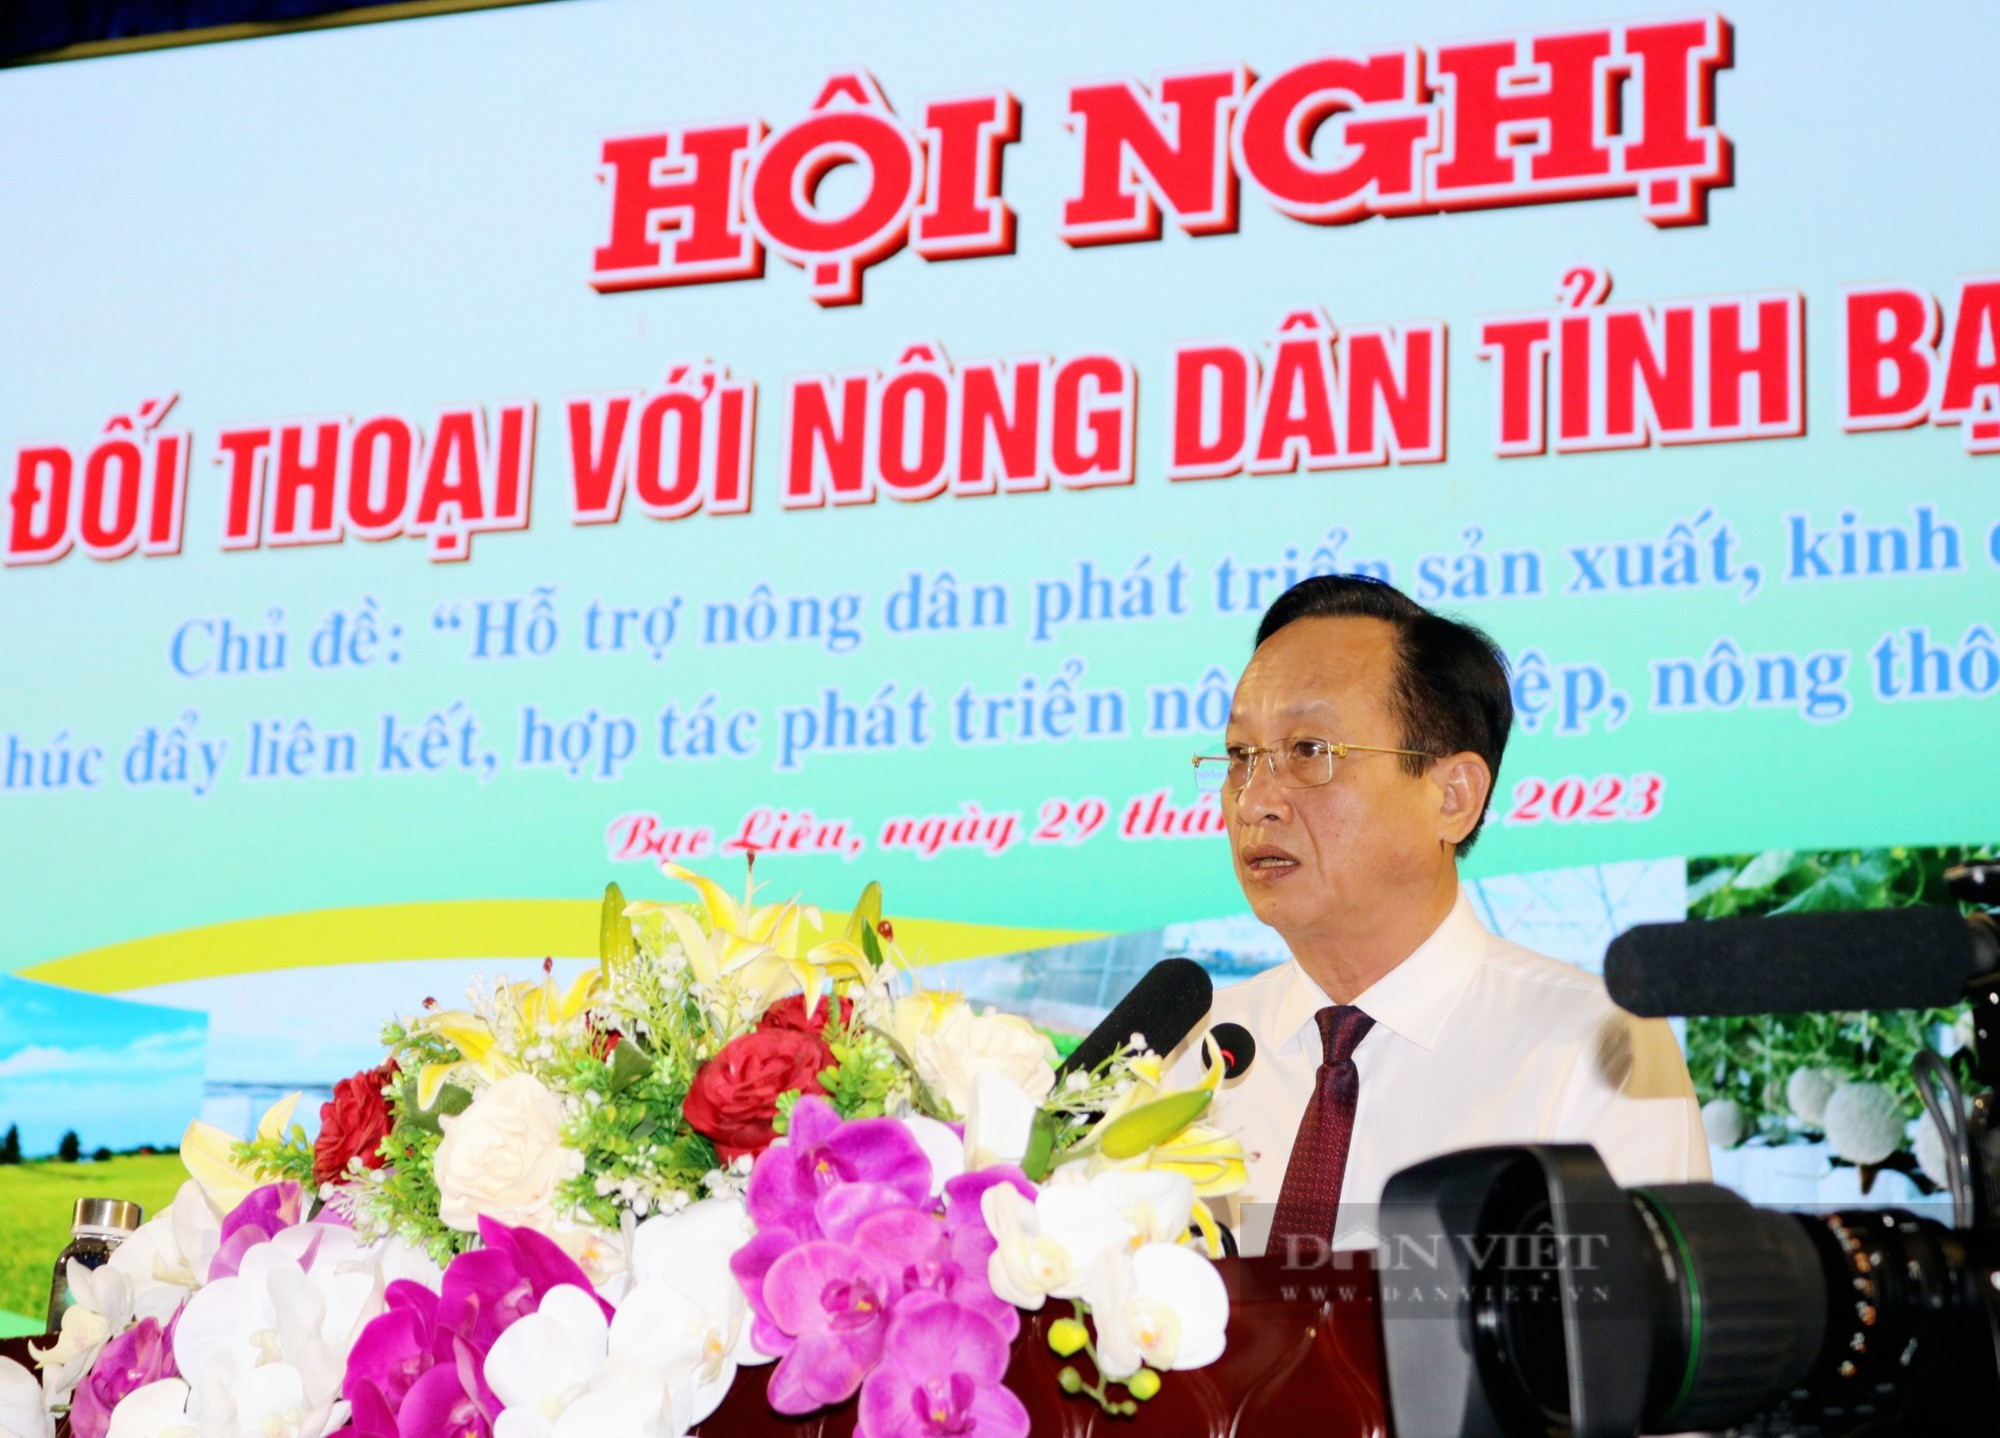 Chủ tịch UBND tỉnh Bạc Liêu Phạm Văn Thiều đối thoại với nông dân - Ảnh 1.